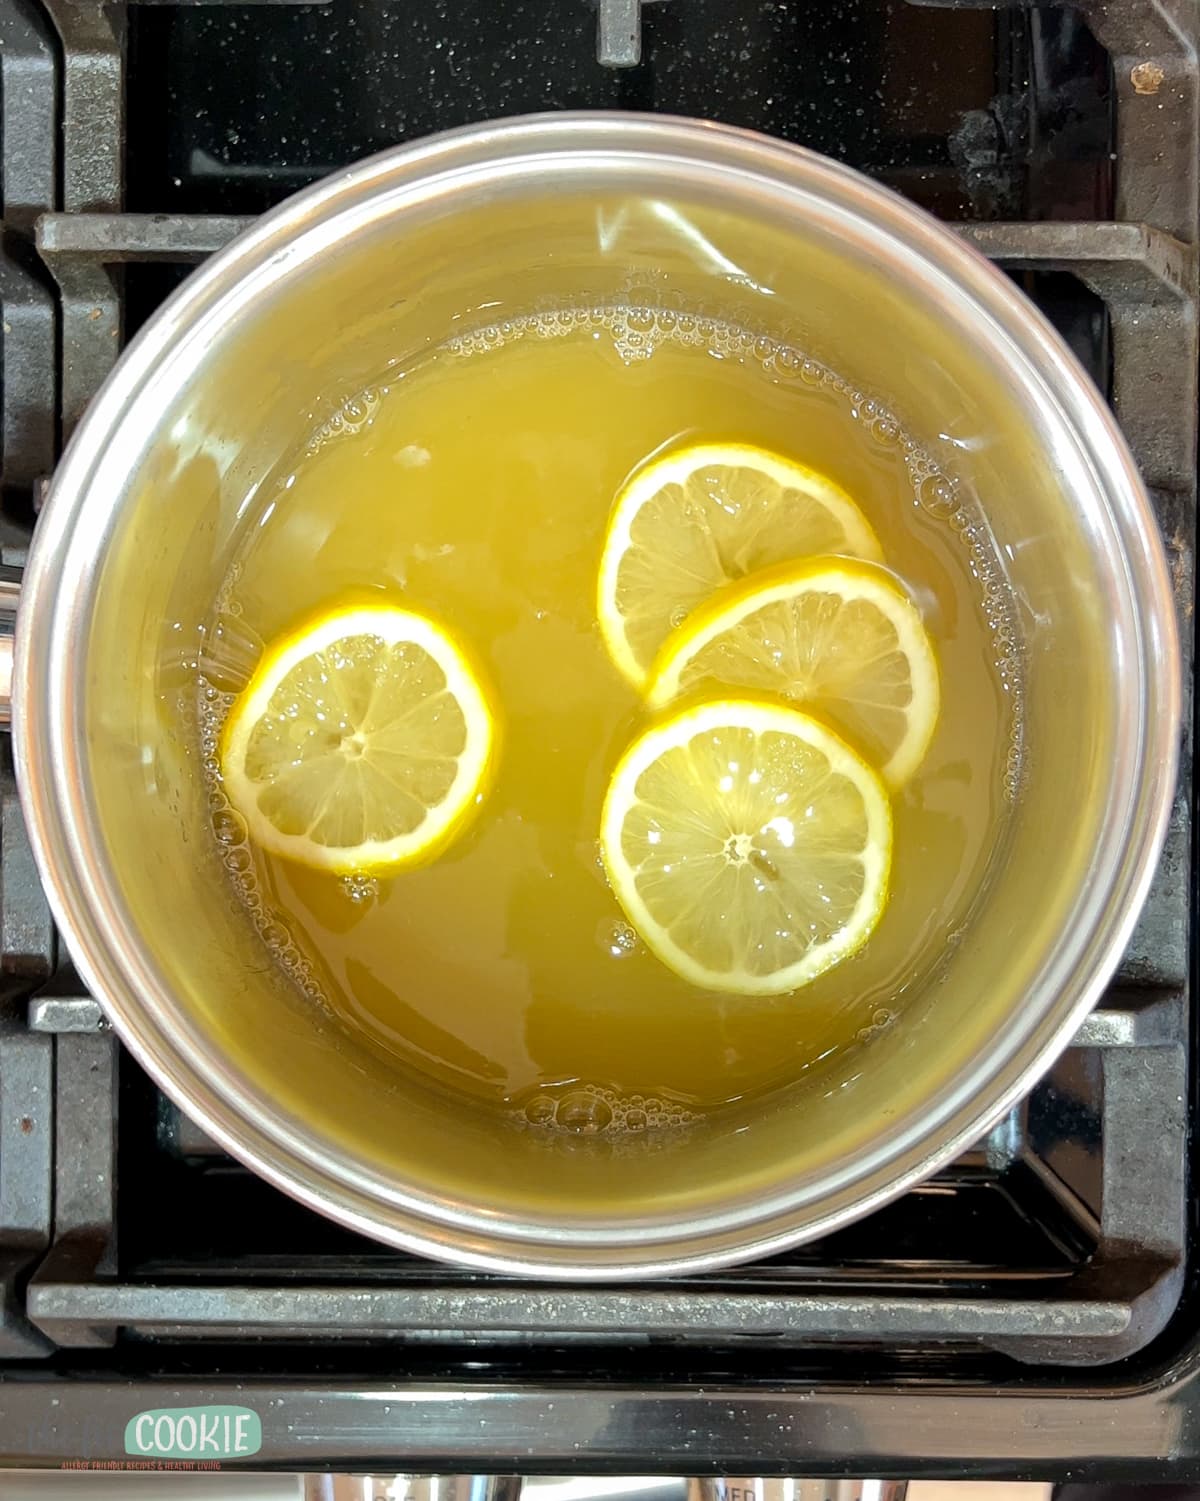 A saucepan with lemon juice and lemon slices on the stove. 